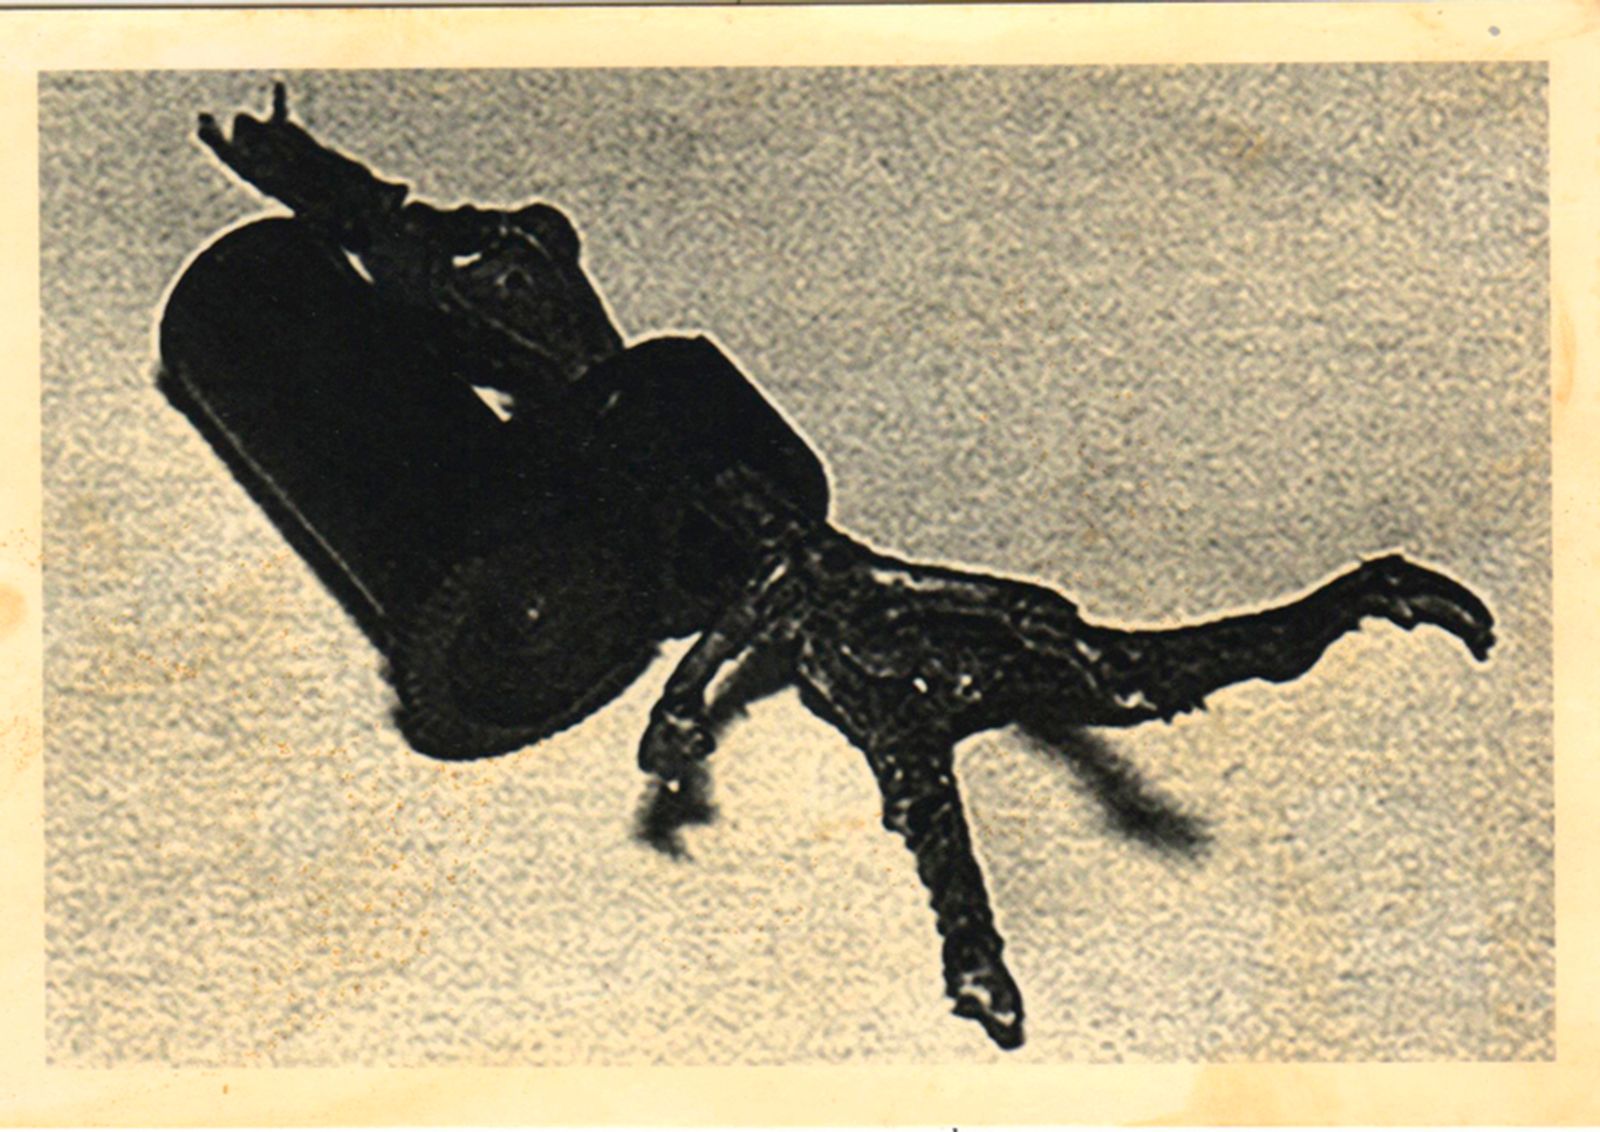 © Asya Zhetvina - The spy-pigeon’s leg, 1944